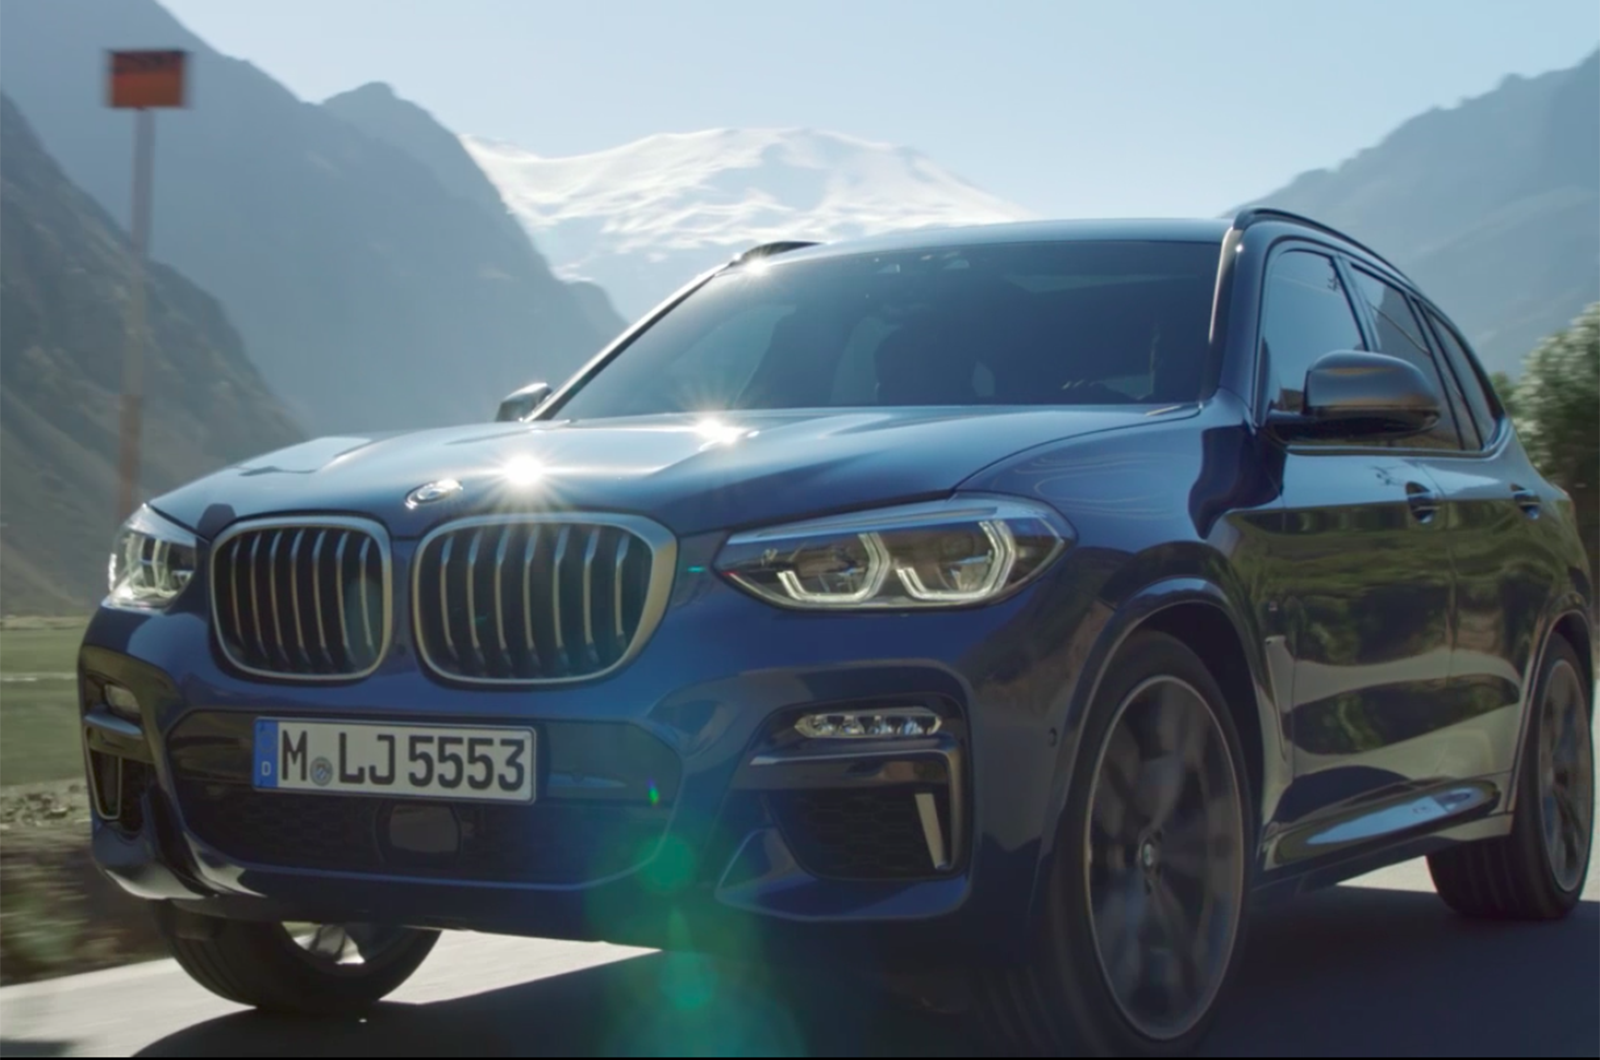 2017 BMW X3: изображения, видео и детали течет впереди официального показа